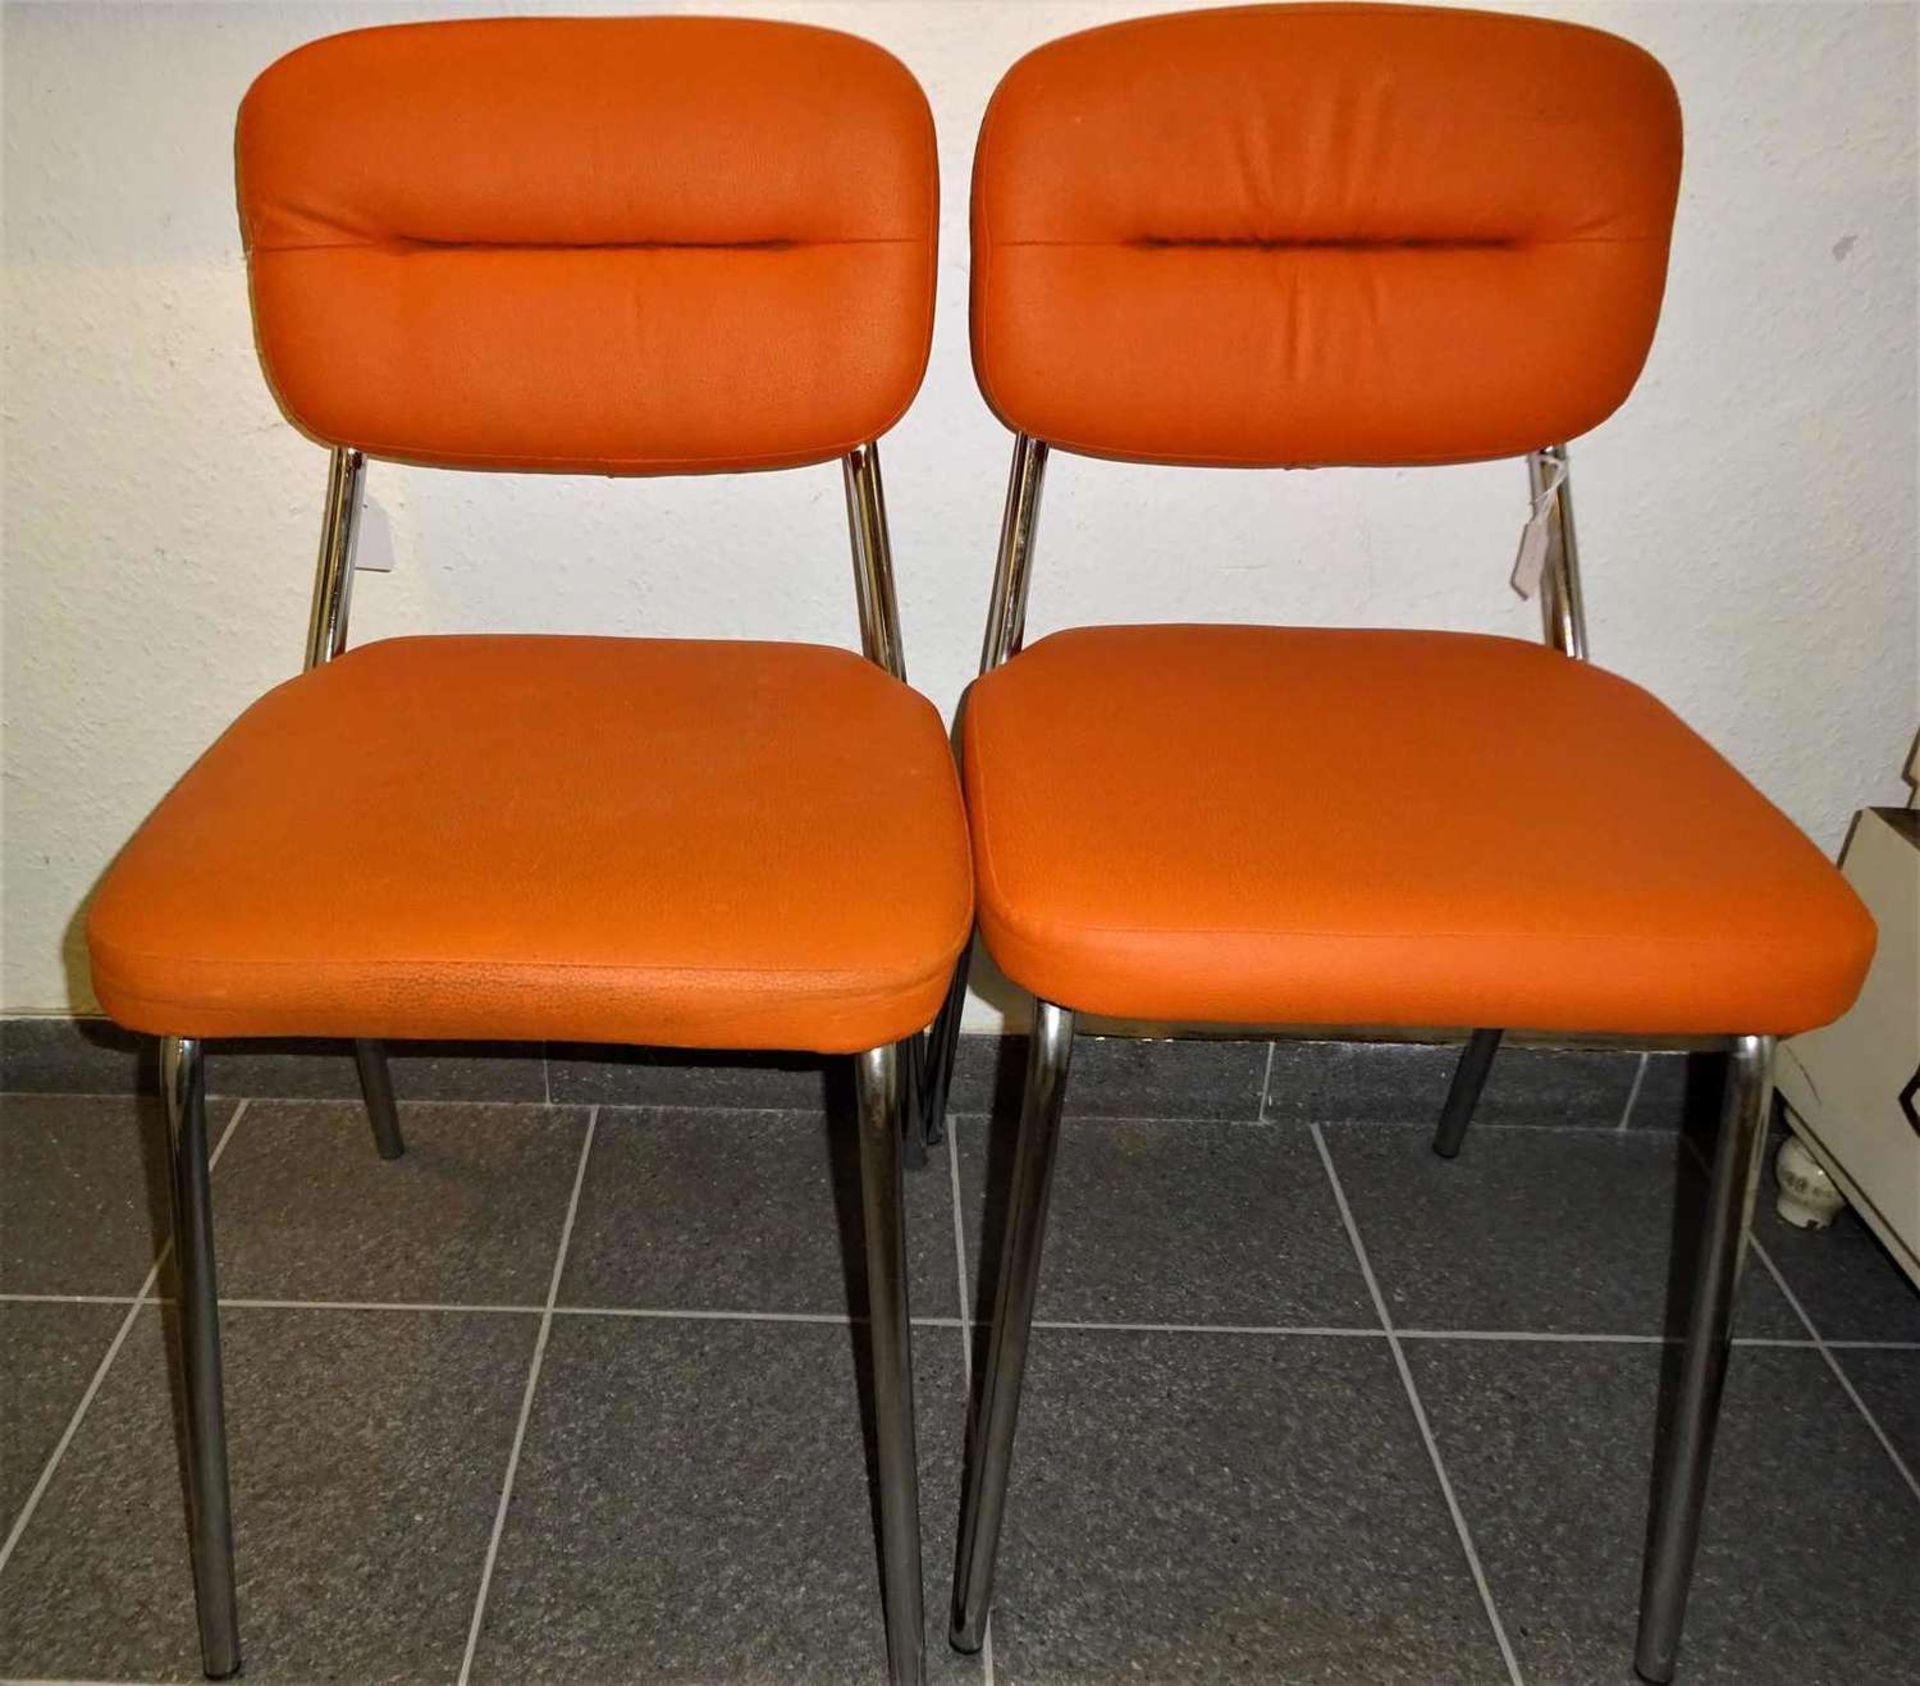 2 Retro Stahlrohrgestell Stühle mit orangenen Kunstlederbezügen, Aufkleber Kontrolle 3, guter Zus